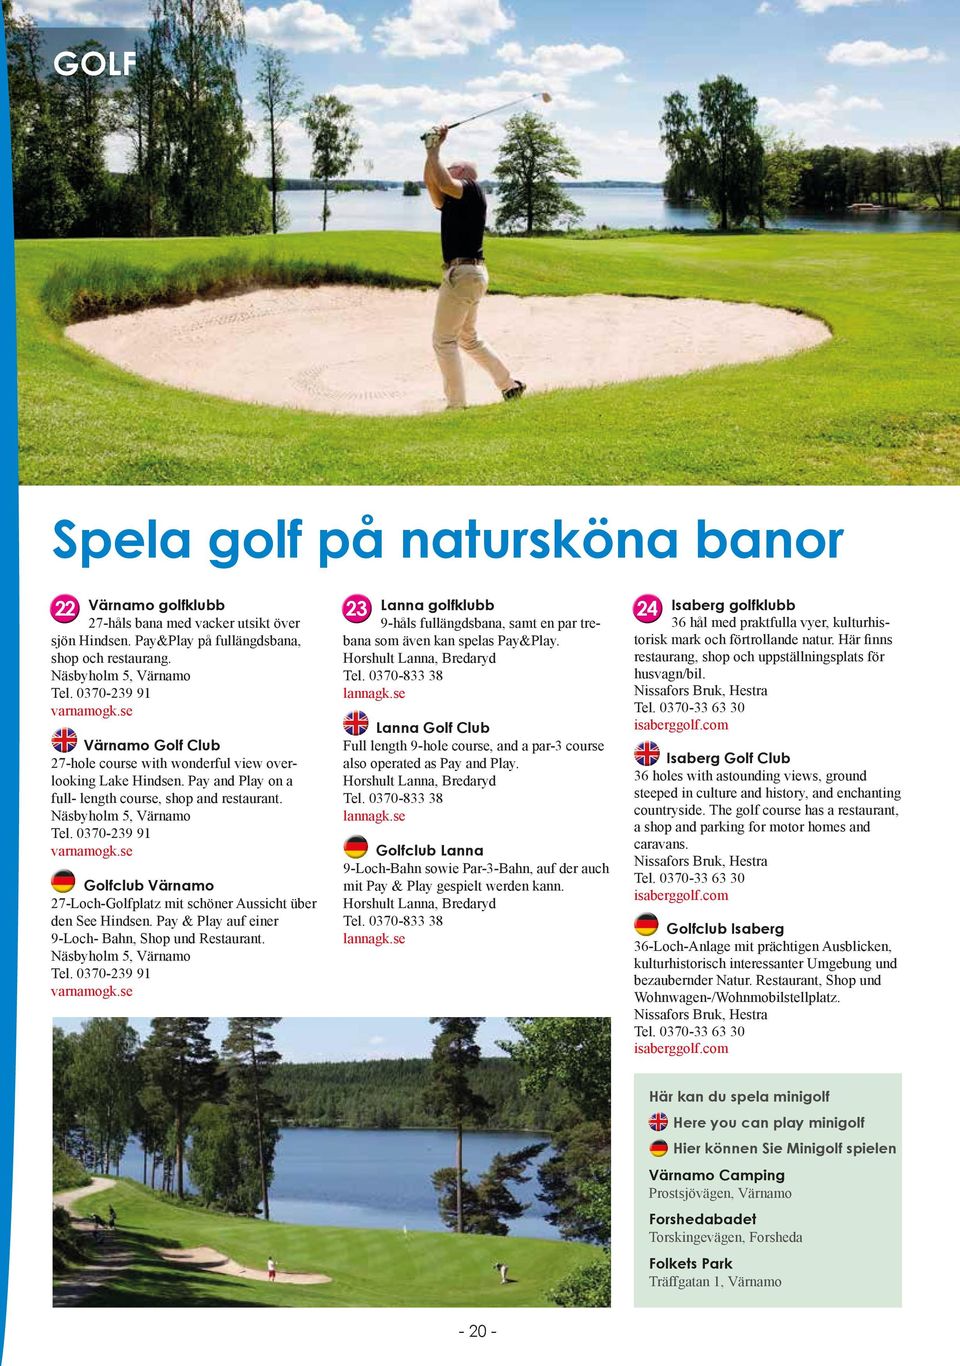 se Golfclub Värnamo 7-Loch-Golfplatz mit schöner Aussicht über den See Hindsen. Pay & Play auf einer 9-Loch- Bahn, Shop und Restaurant. Näsbyholm 5, Värnamo Tel. 0370-39 9 varnamogk.